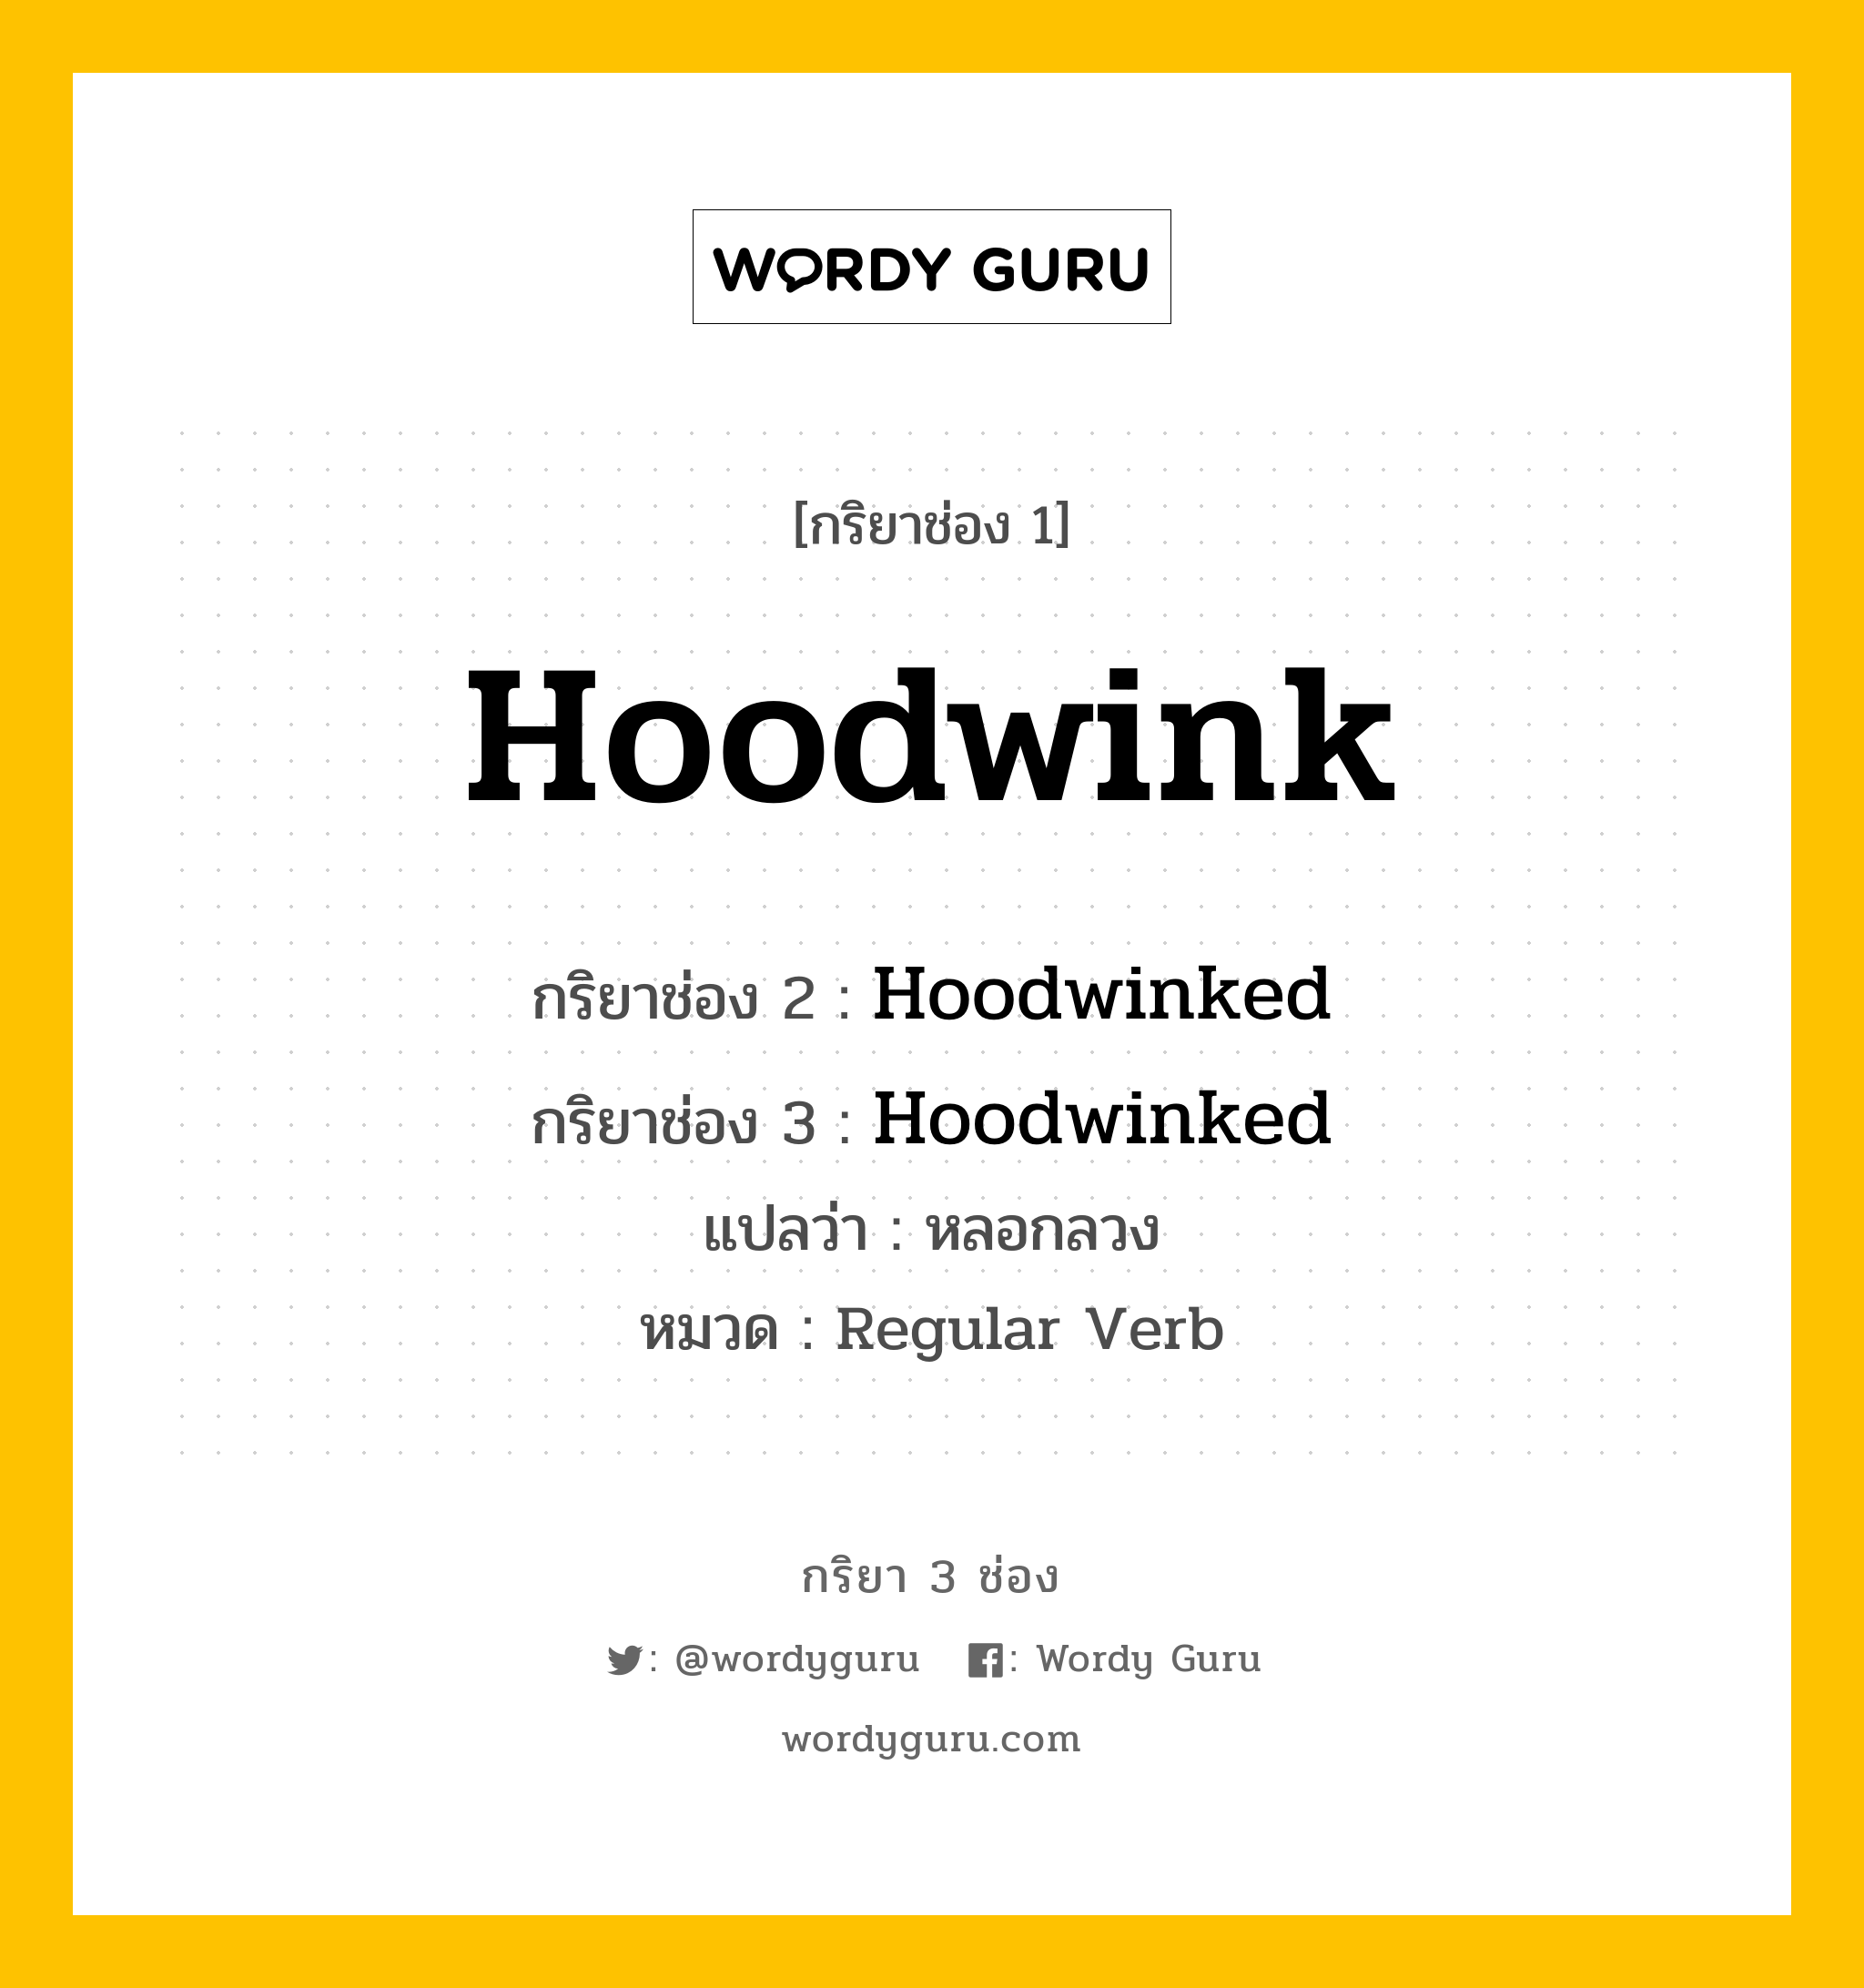 กริยา 3 ช่อง ของ Hoodwink คืออะไร? มาดูคำอ่าน คำแปลกันเลย, กริยาช่อง 1 Hoodwink กริยาช่อง 2 Hoodwinked กริยาช่อง 3 Hoodwinked แปลว่า หลอกลวง หมวด Regular Verb หมวด Regular Verb